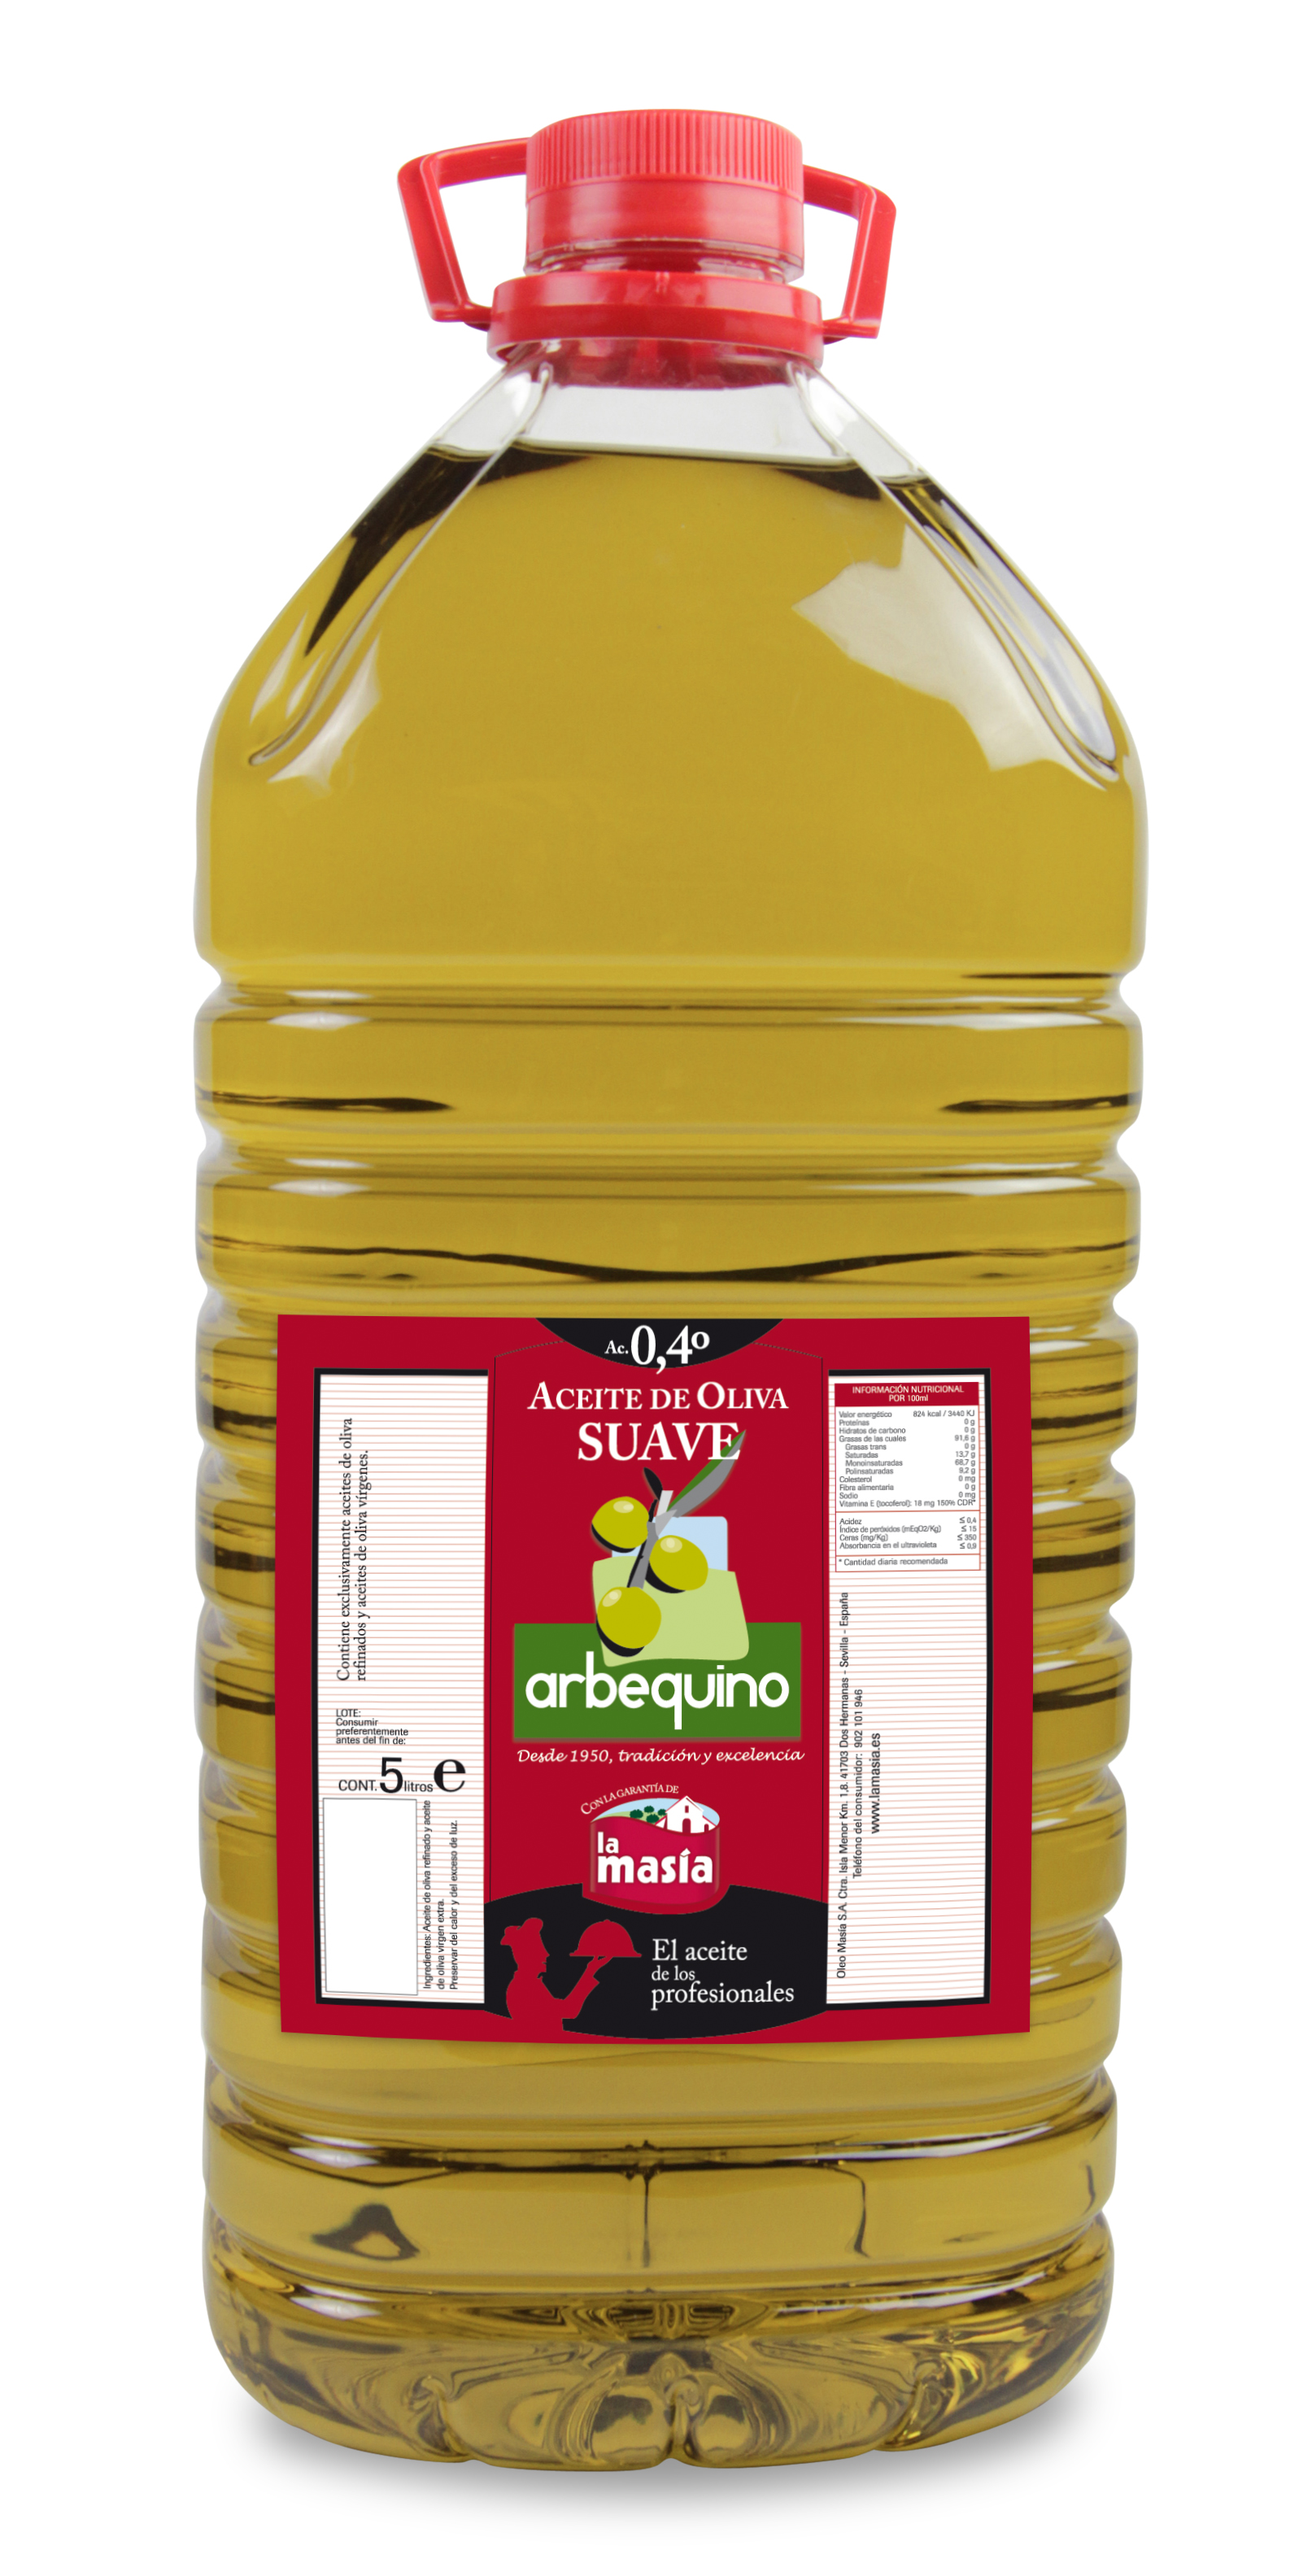 Aceite de oliva suave Arbequino 5L